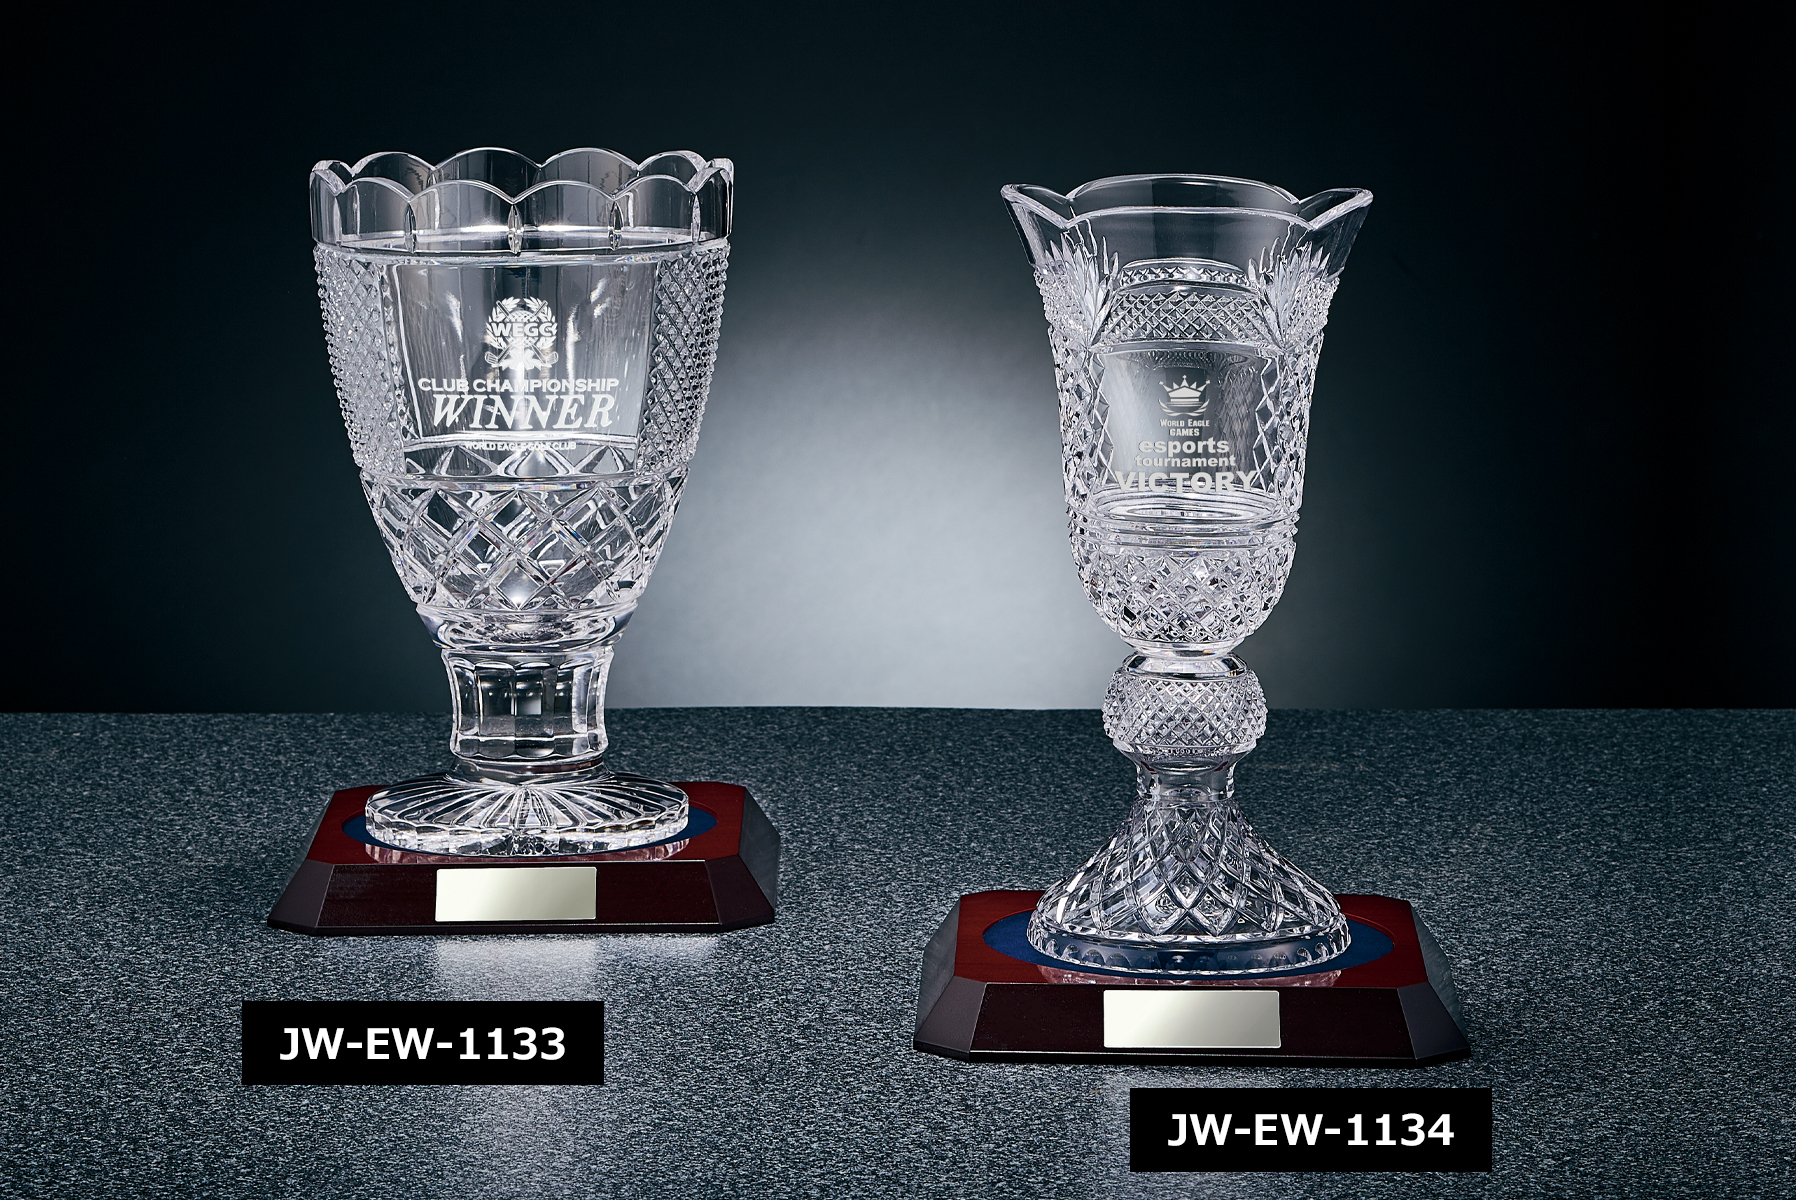 ボヘミアクリスタル製のオリジナル優勝カップ JW-EW-1133